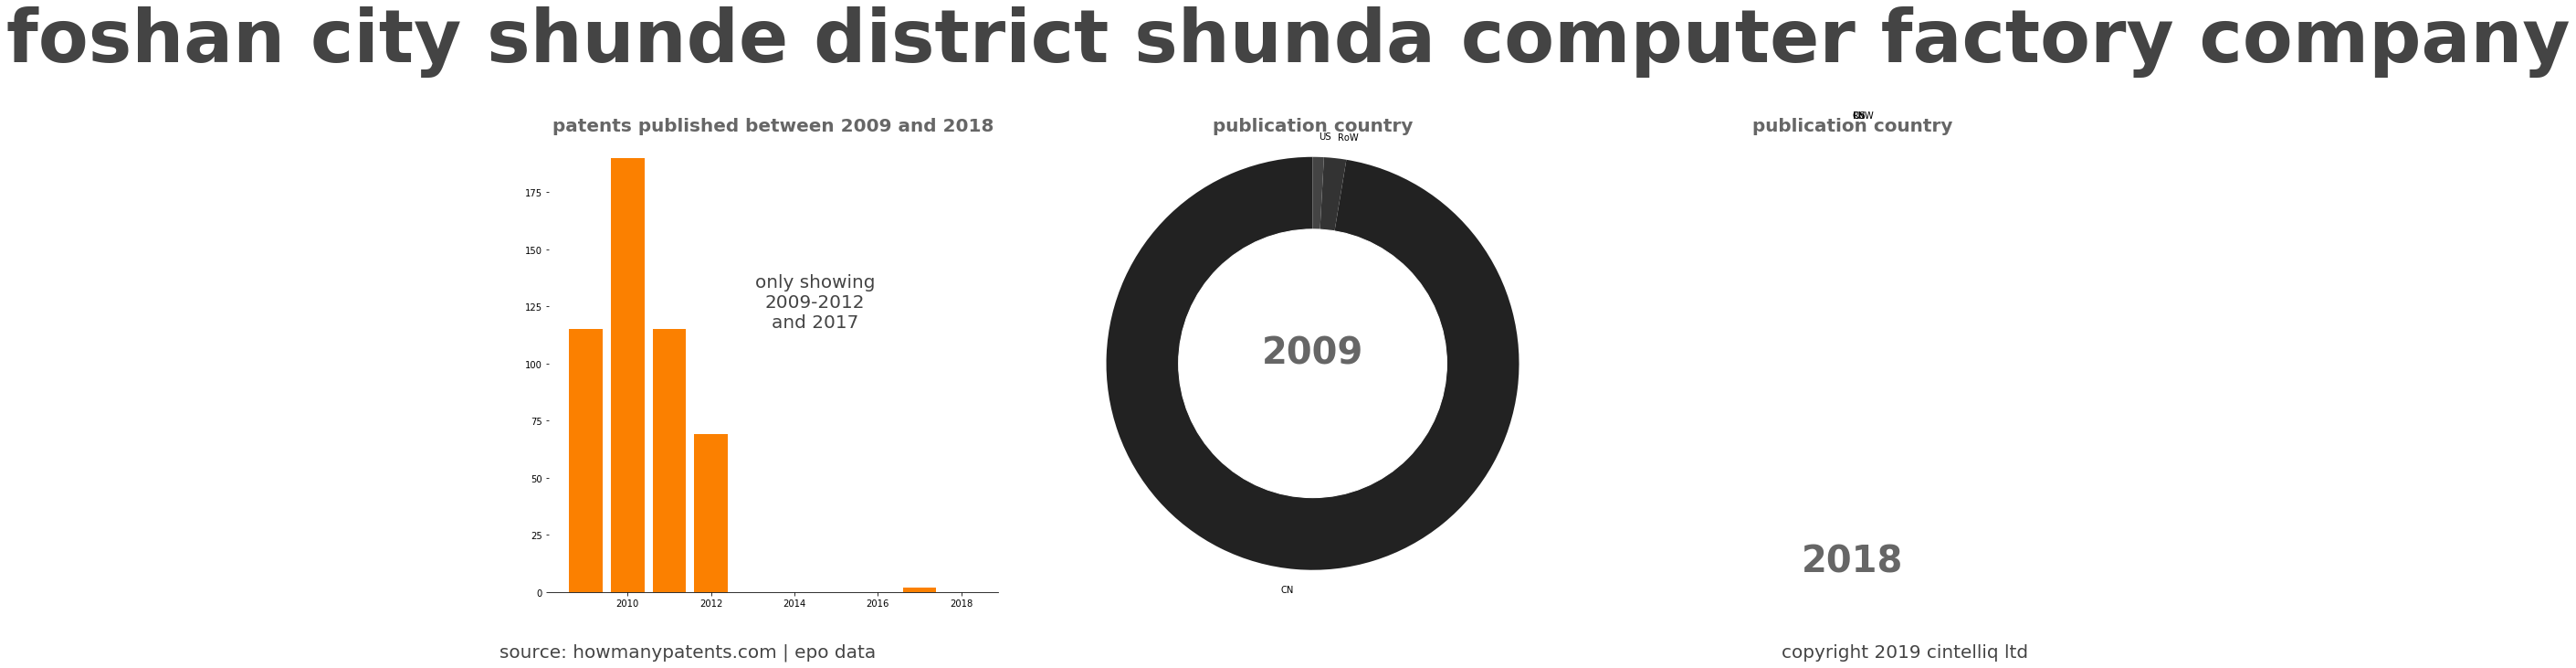 summary of patents for Foshan City Shunde District Shunda Computer Factory Company